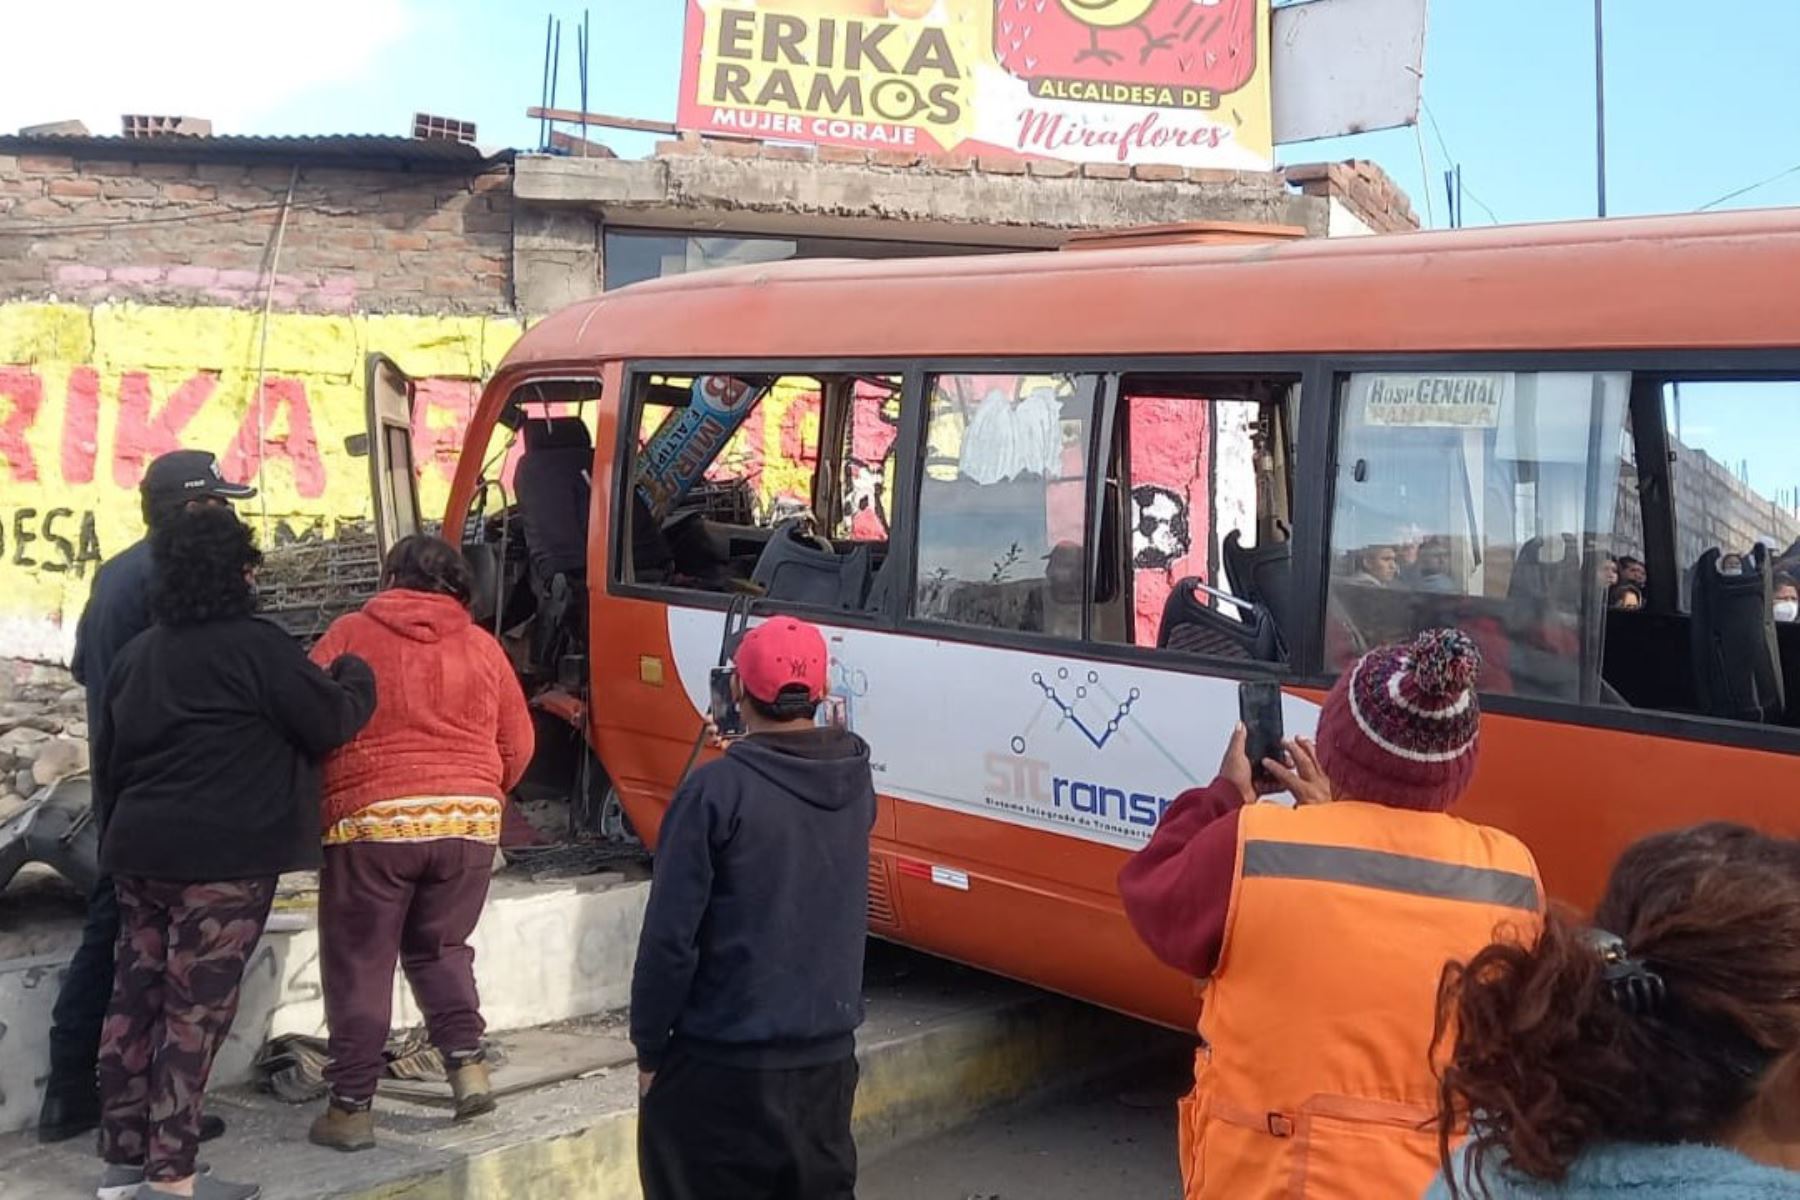 Al menos 30 pasajeros resultaron heridas, entre ellos 17 escolares, tras el choque frontal de una custer de servicio público contra el muro de una vivienda,  en el distrito de Miraflores, en Arequipa. Foto: Facebook/ Municipalidad de Arequipa